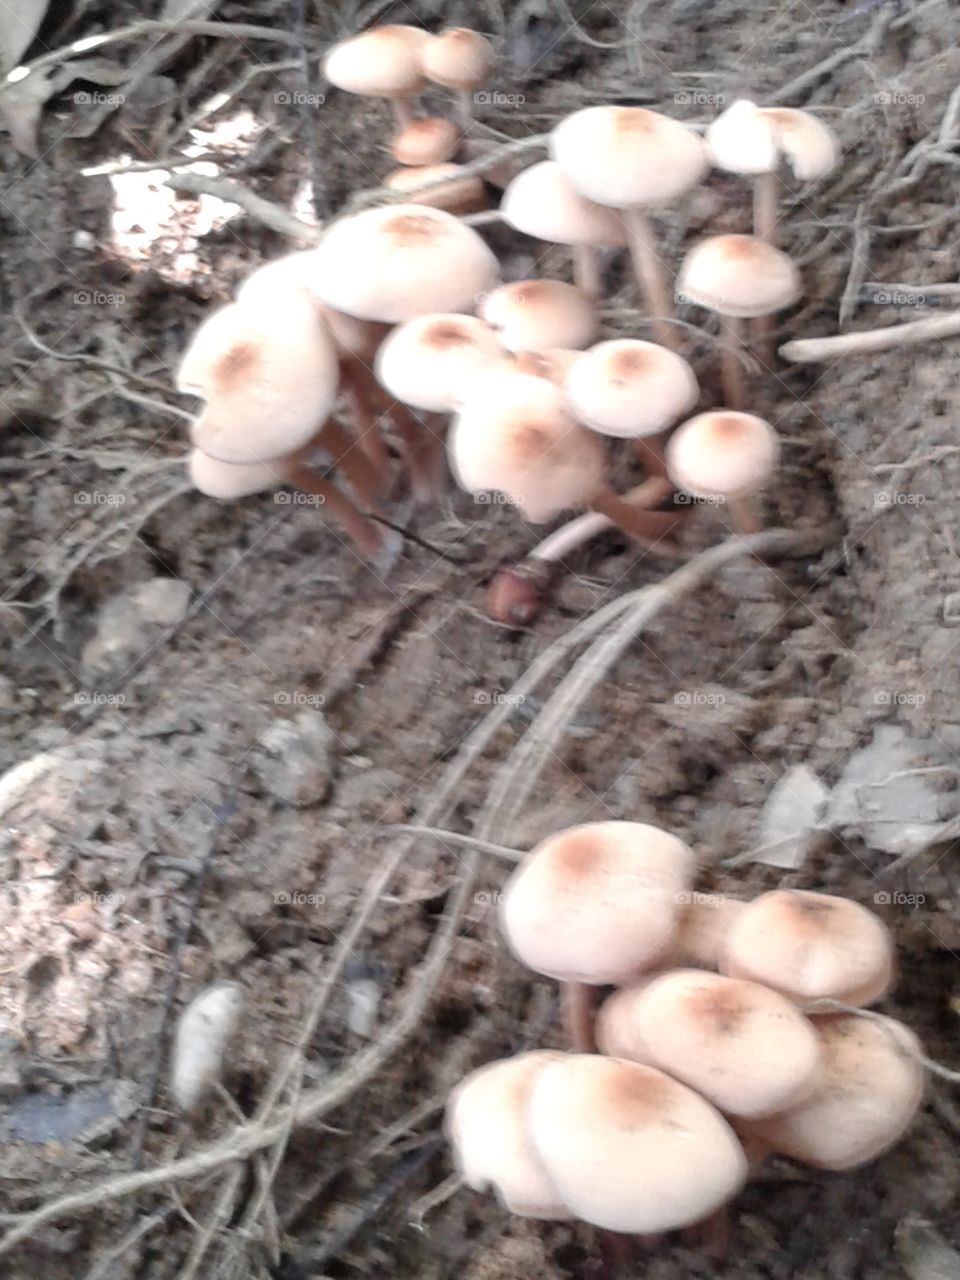 Mushroom species